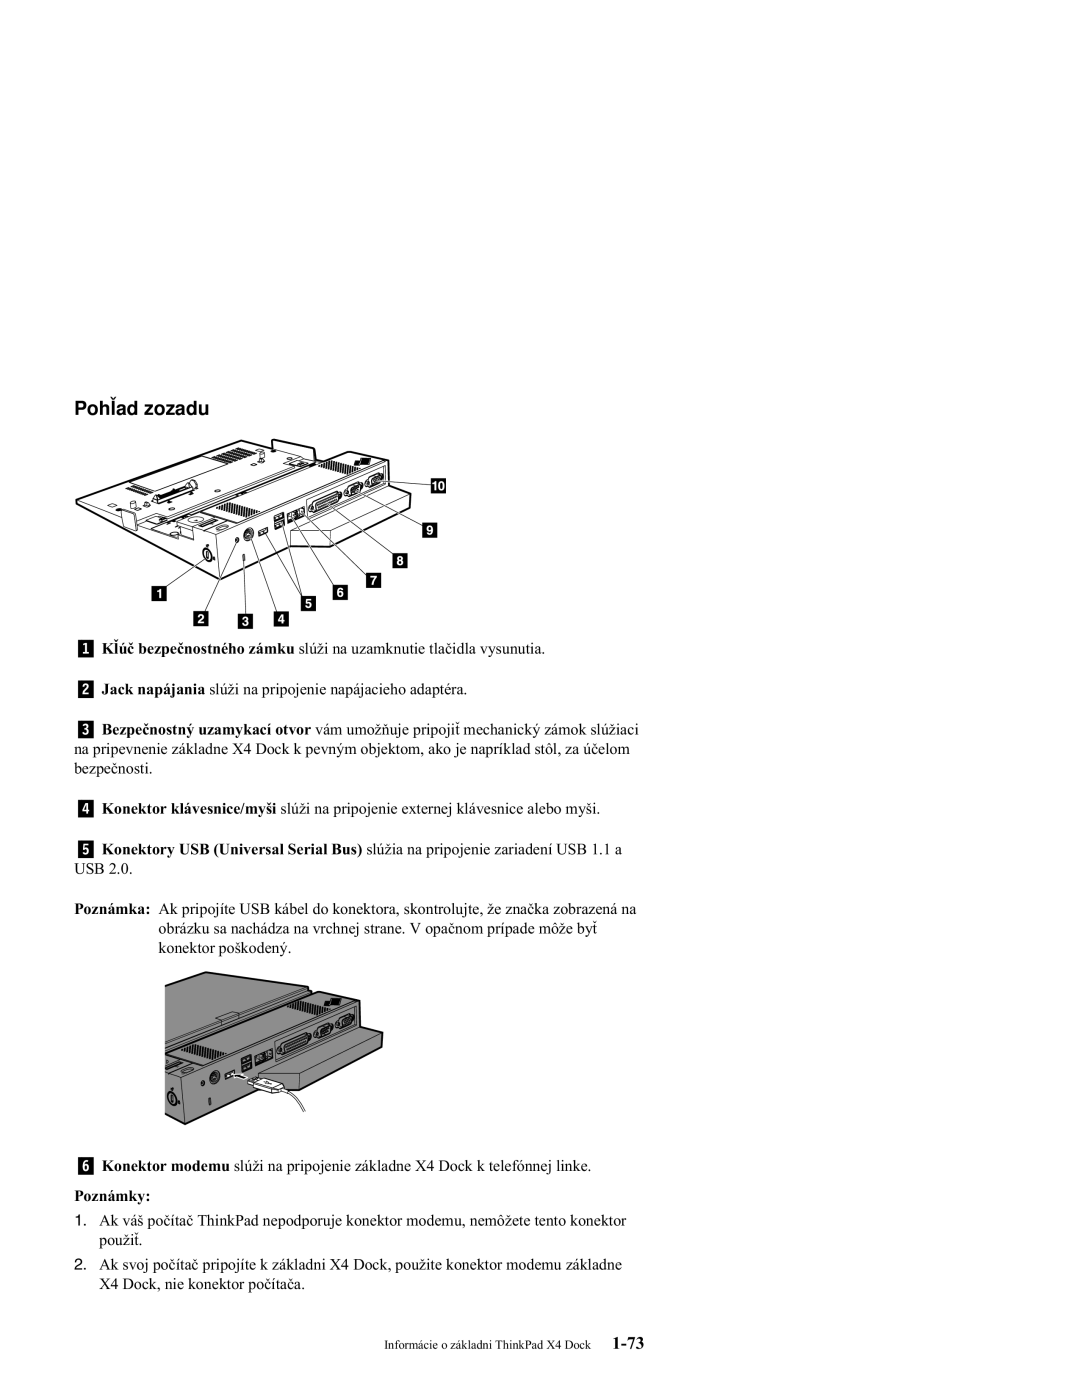 IBM X4 manual Pohľad zozadu, Poznámky 